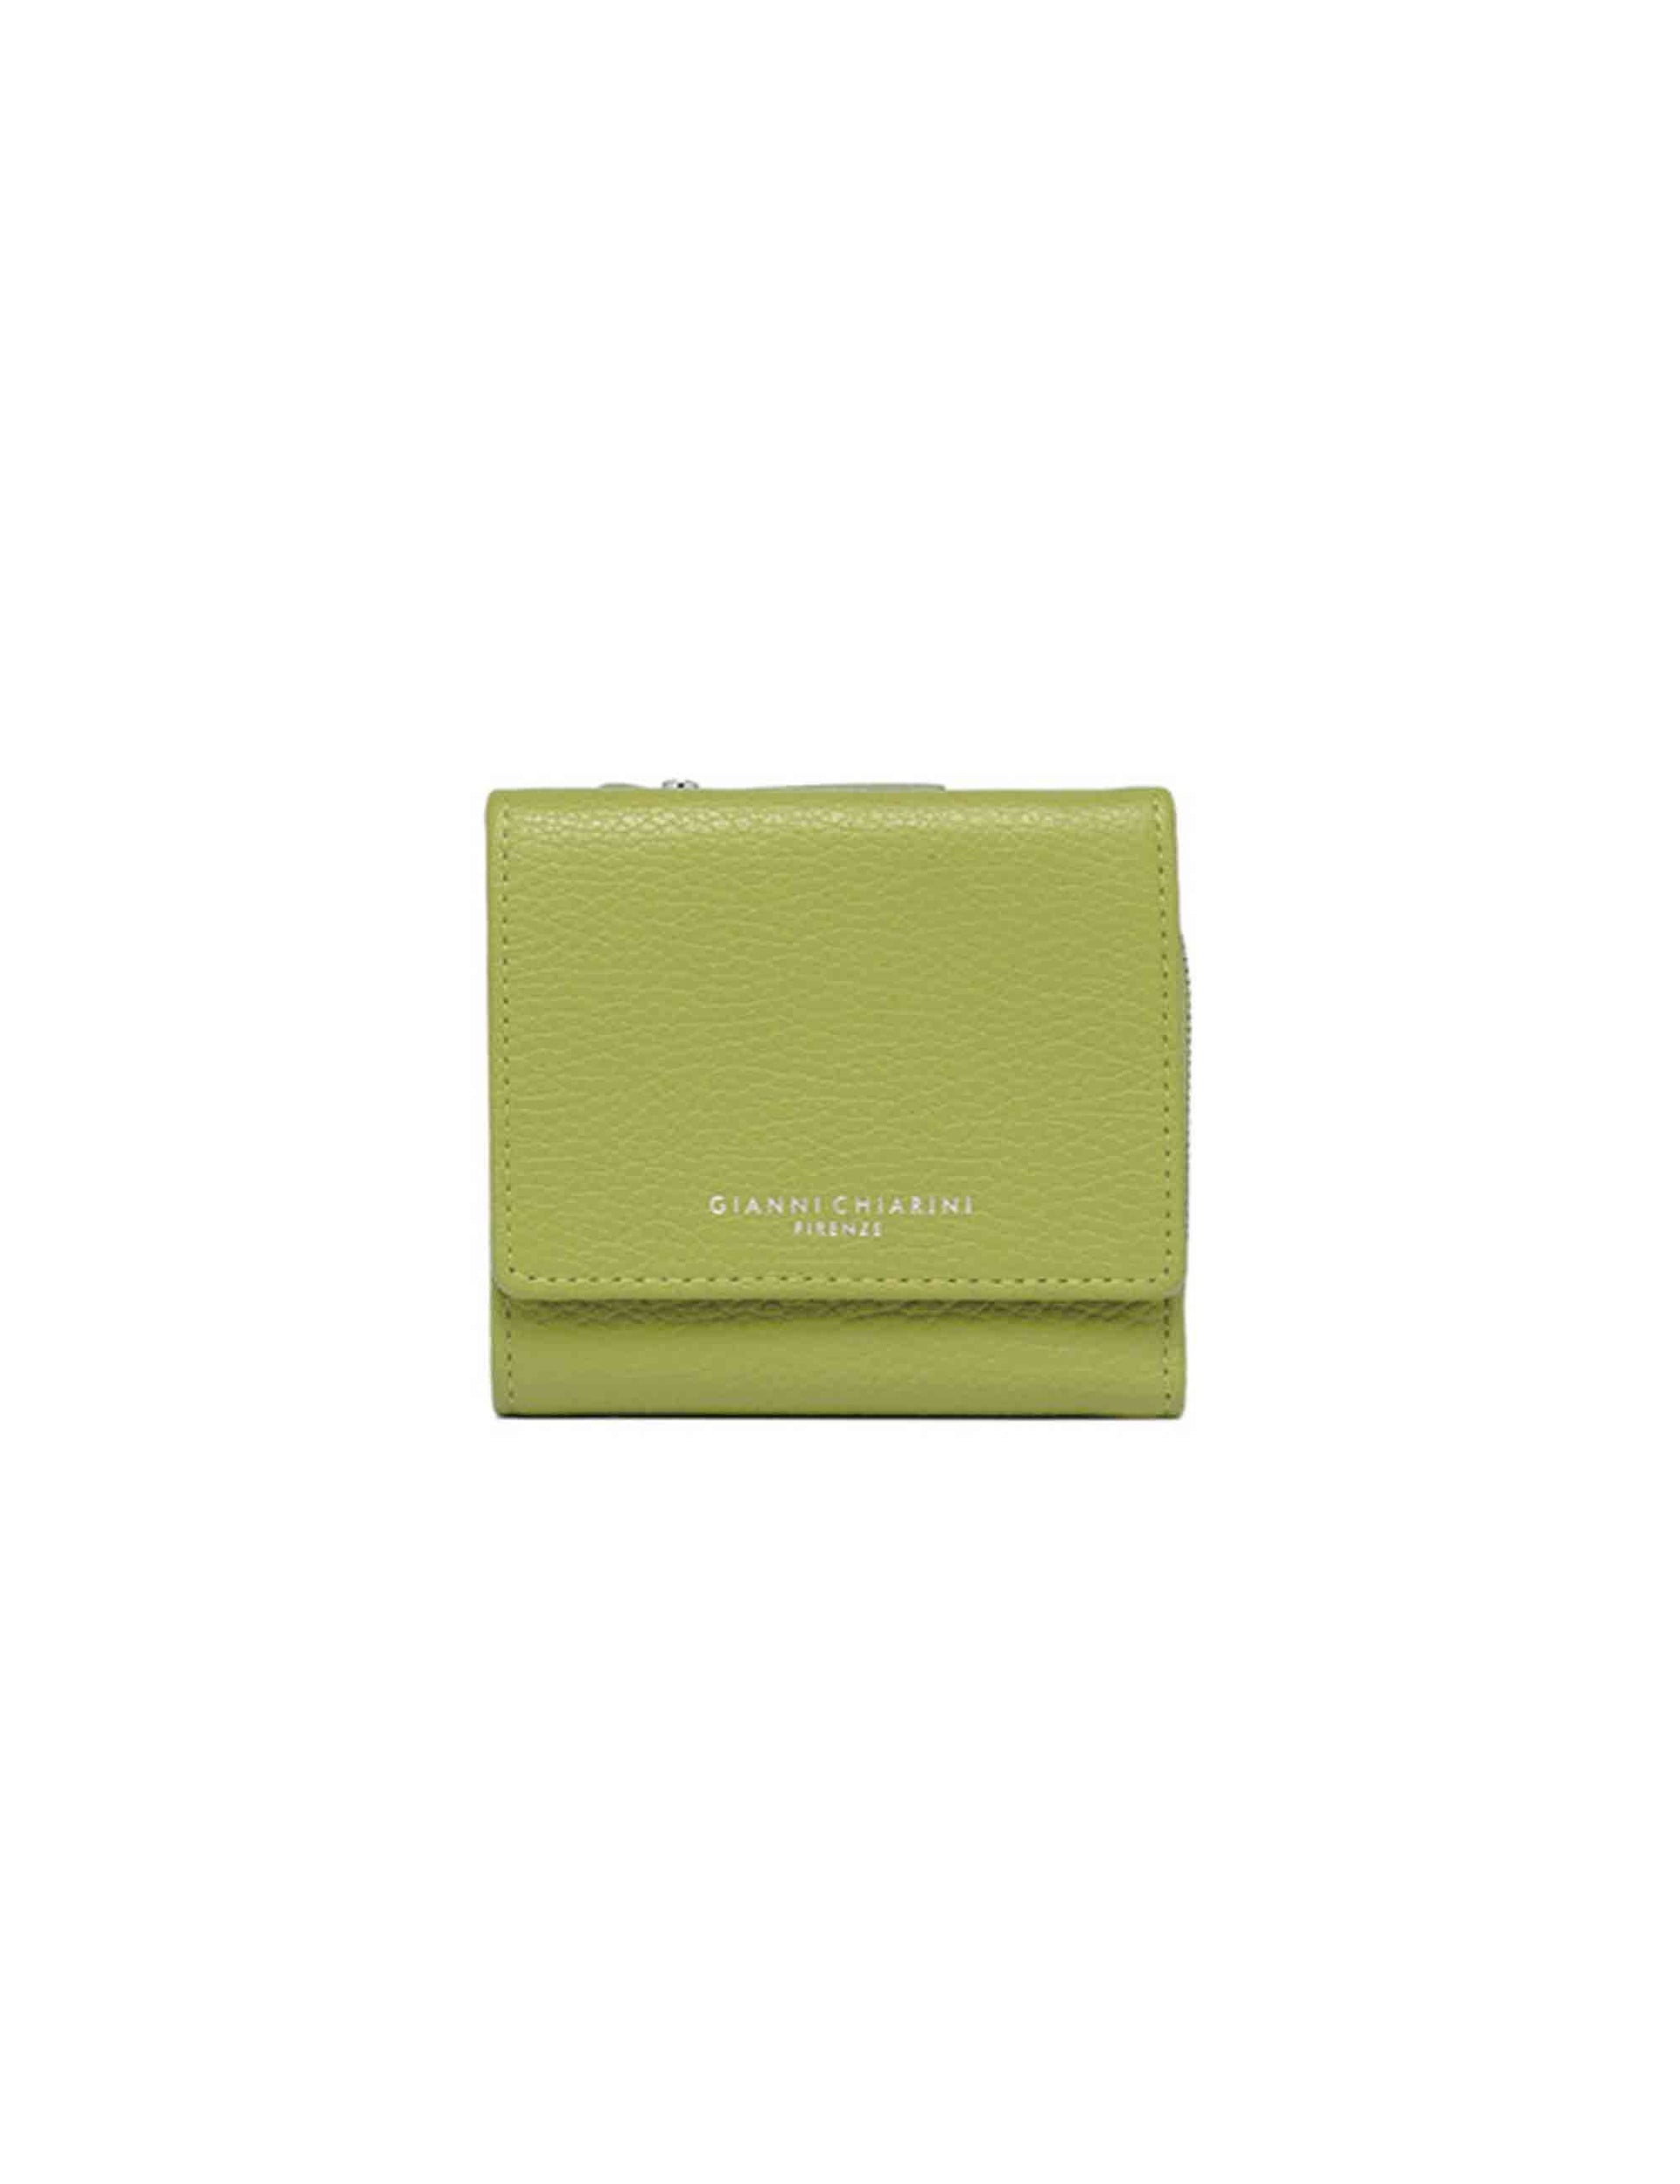 Women's green leather wallet